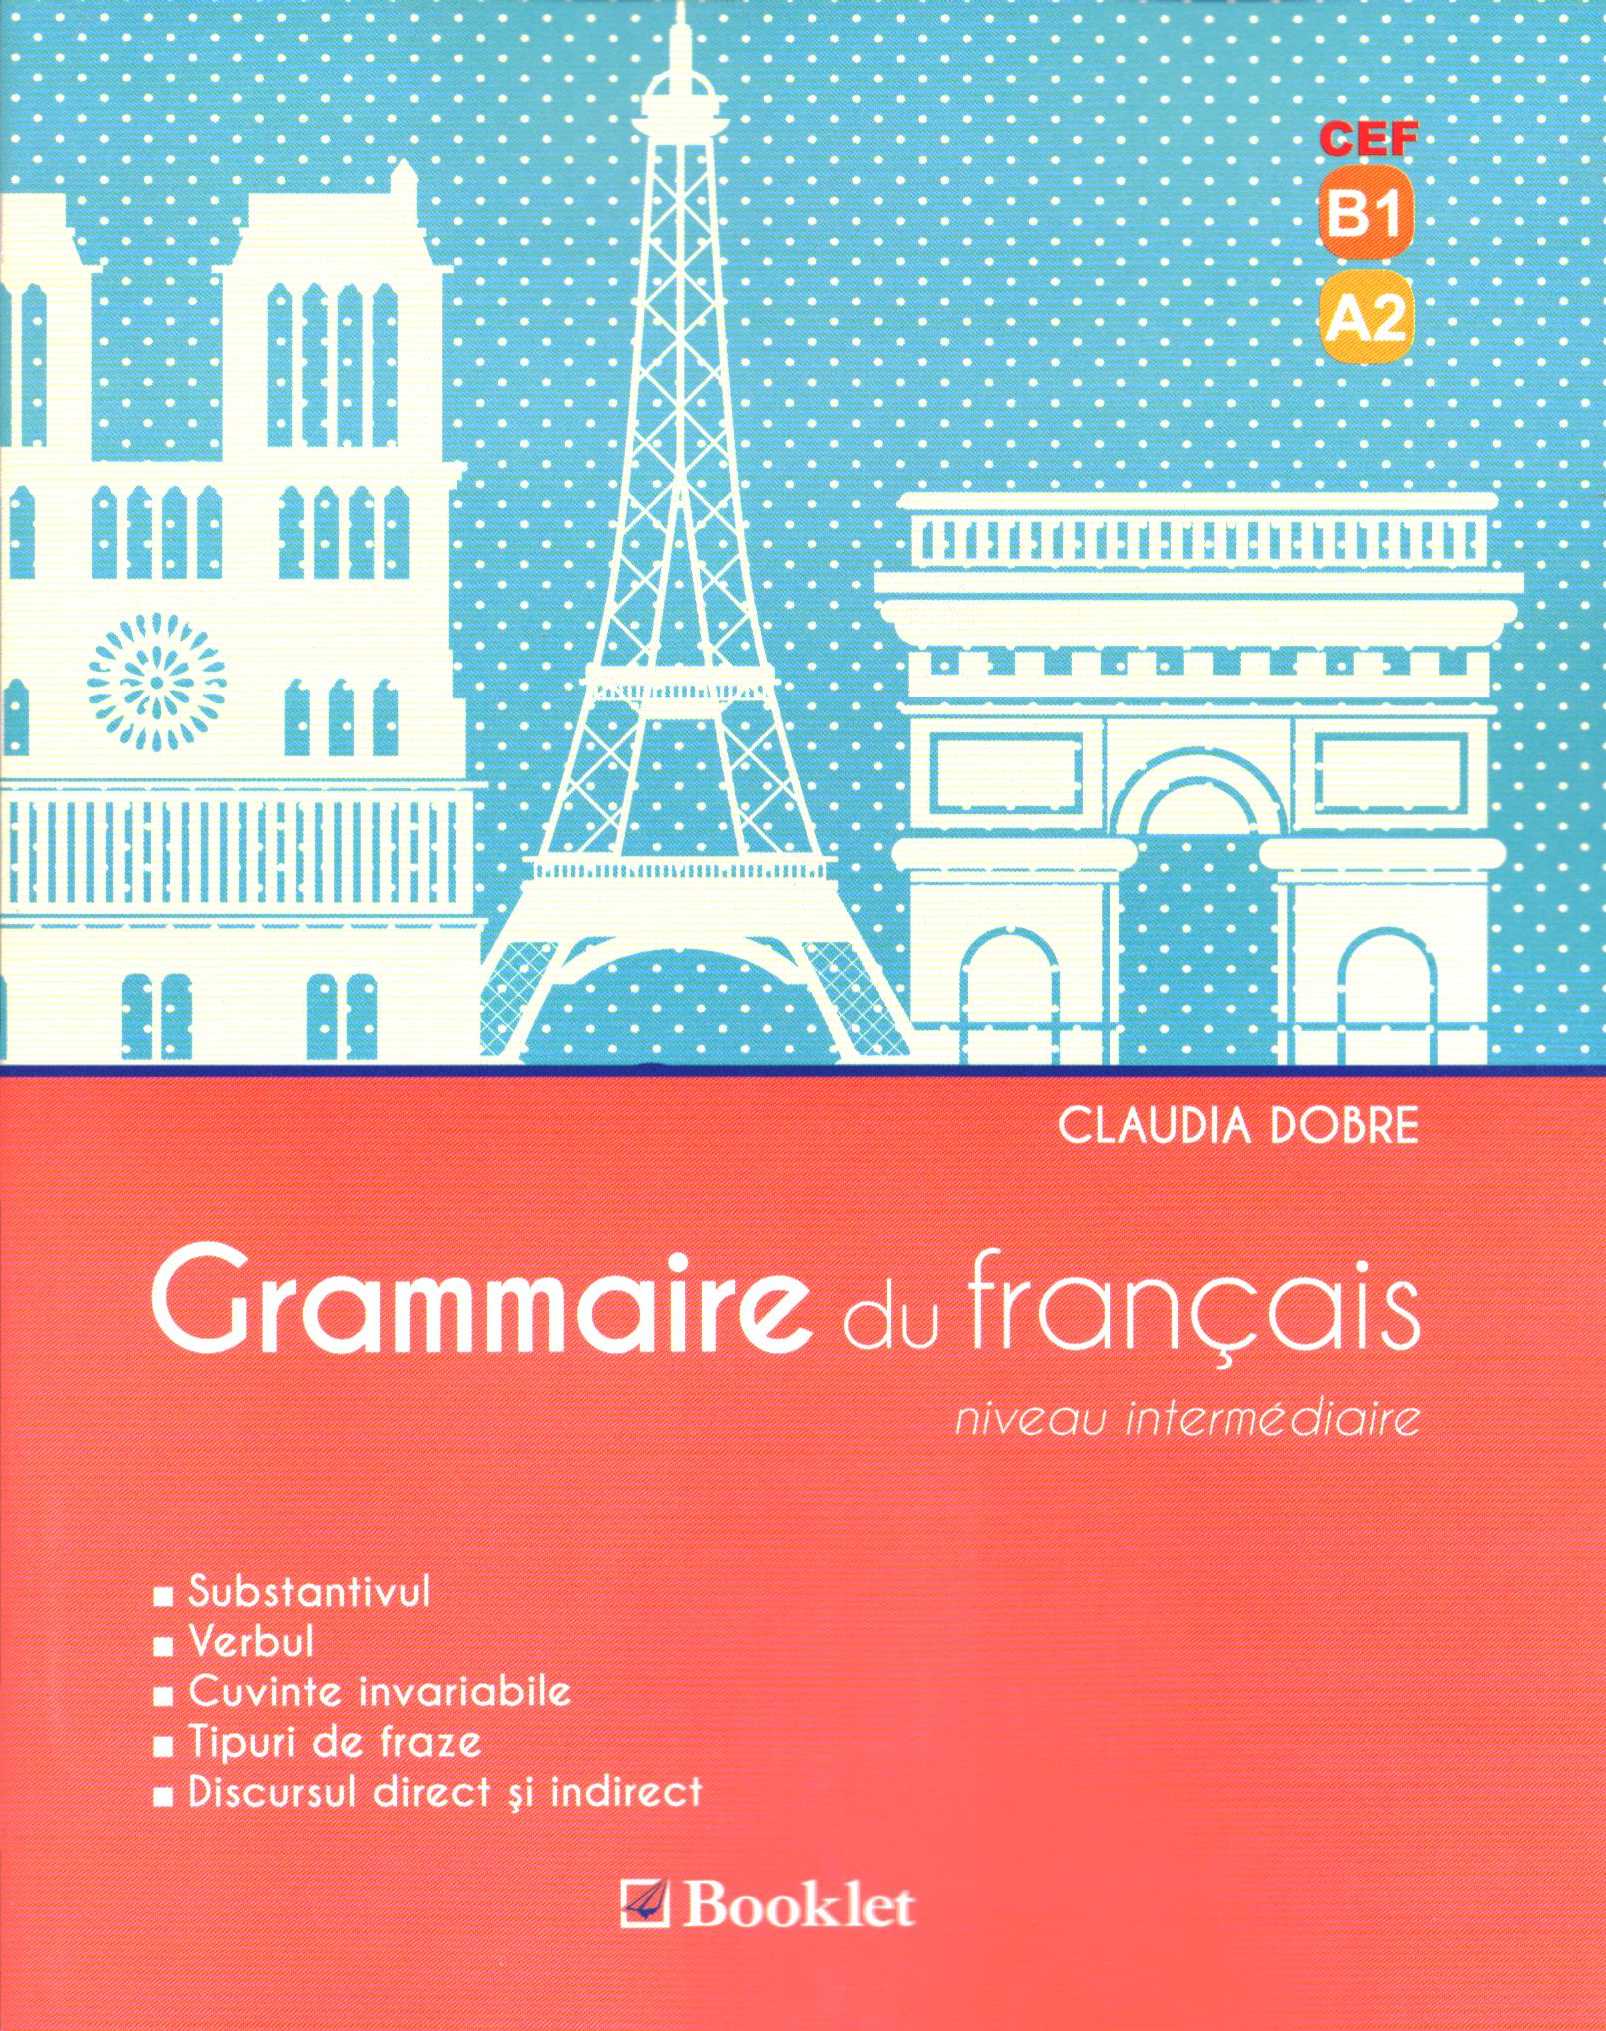 Grammaire du francais - Claudia Dobre (niveau Intermediaire)